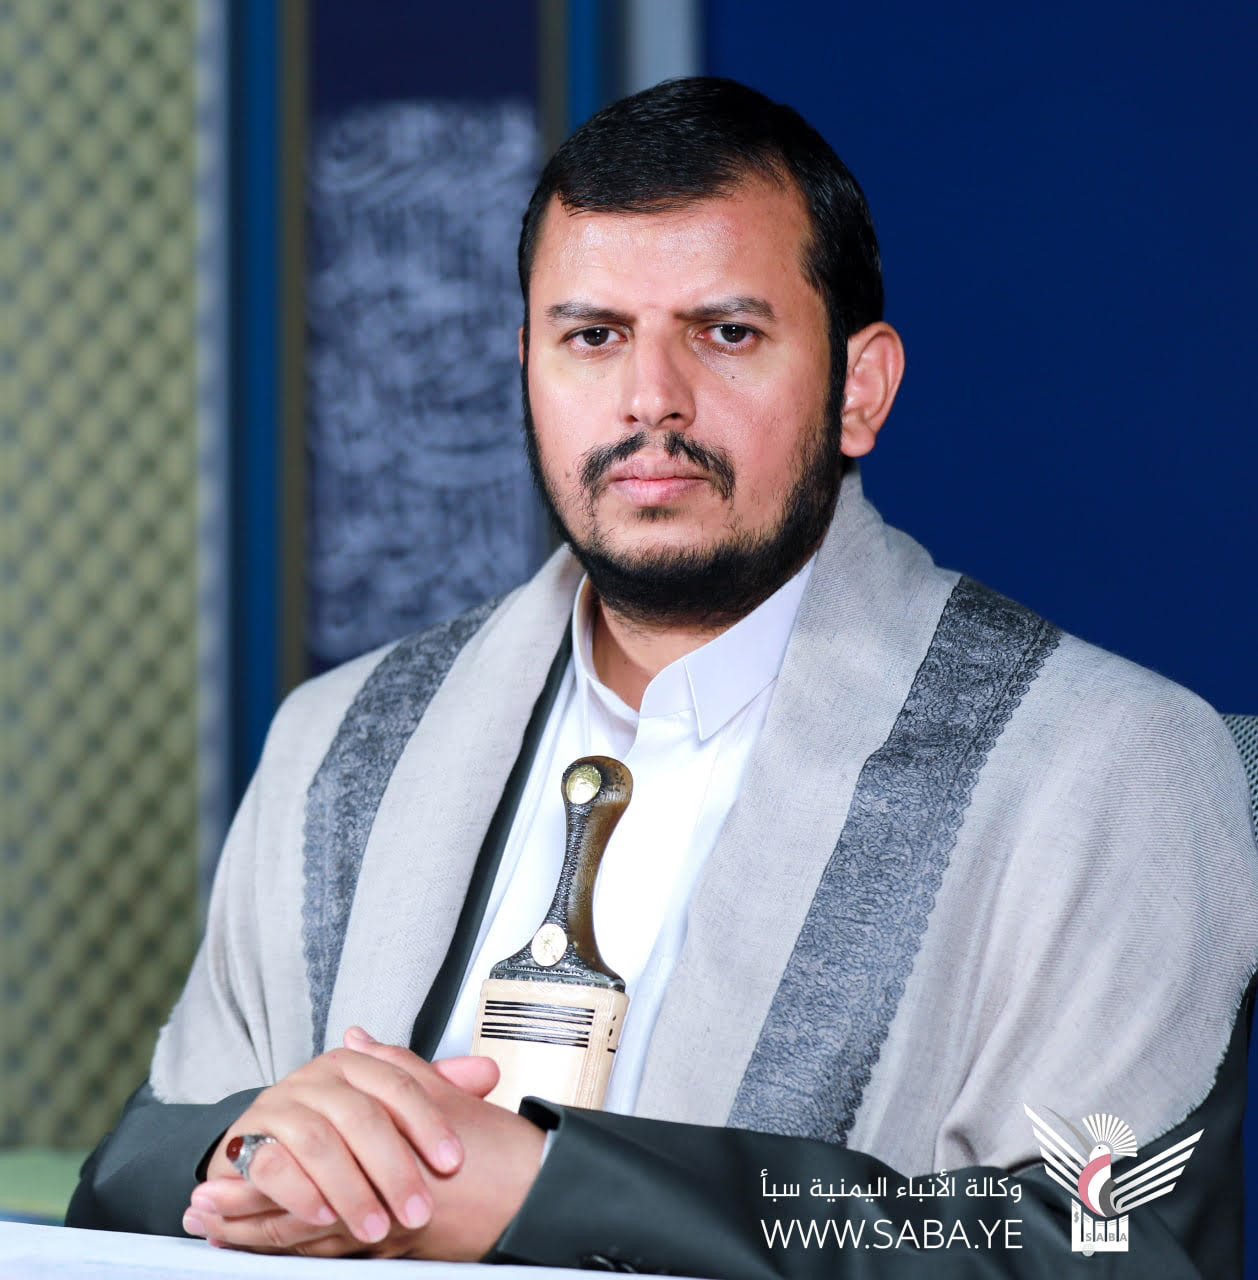 Le chef de la révolution félicite le peuple yéménite et la nation islamique à l'occasion du Nouvel An Hijri